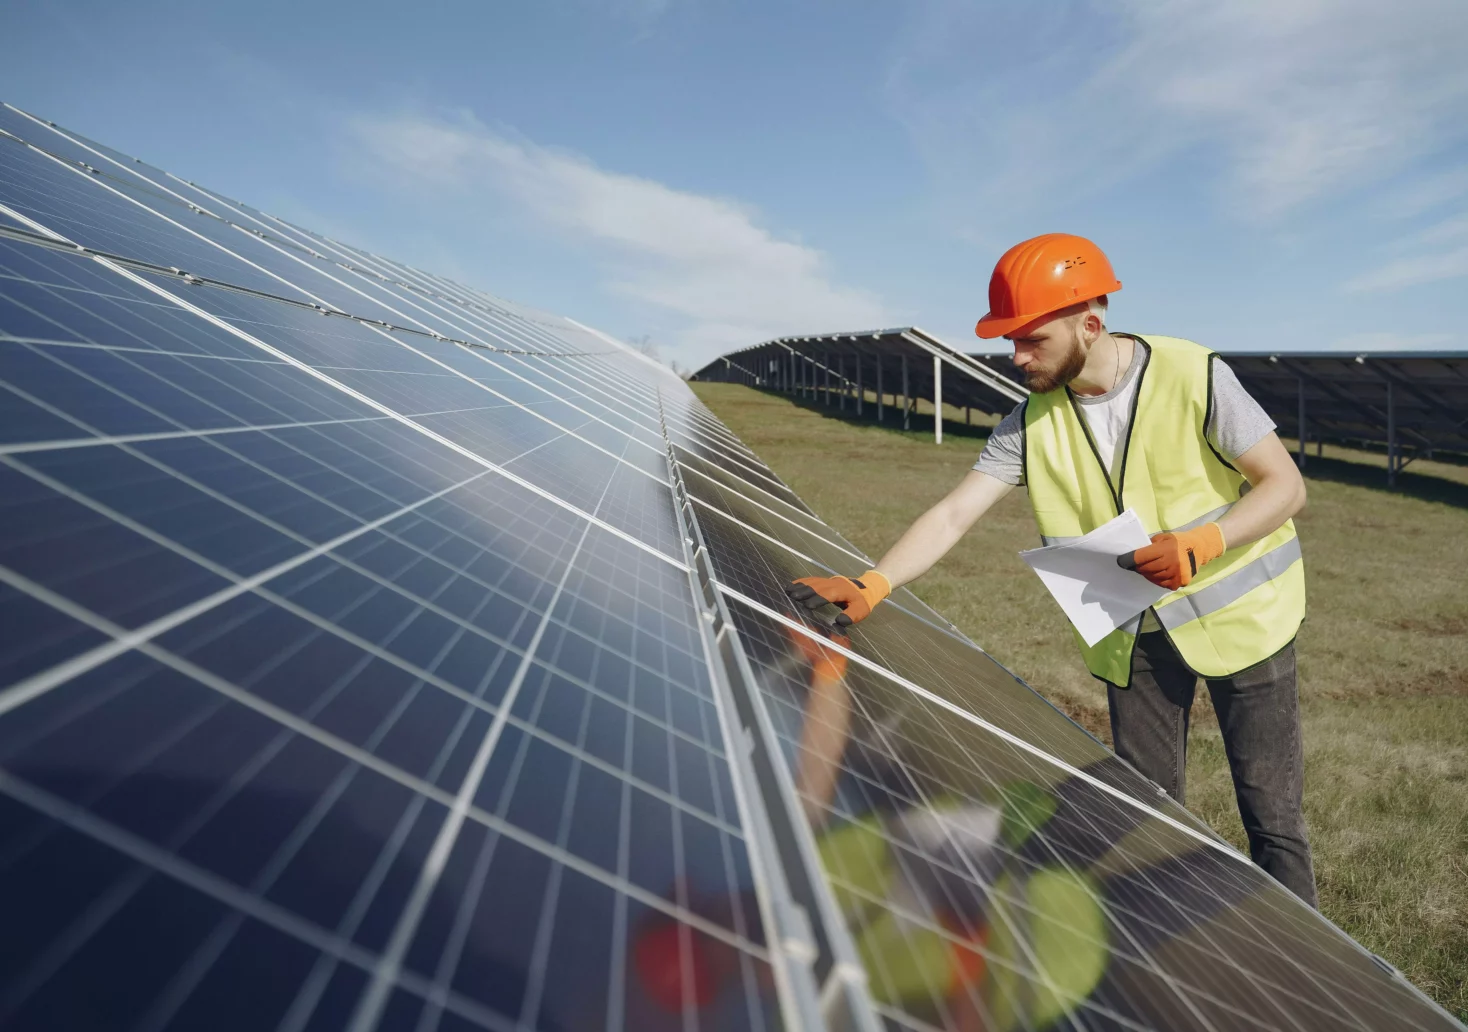 Ein Bild auf 5min.at zeigt einen Arbeiter, der eine Photovoltaik-Anlage checkt.